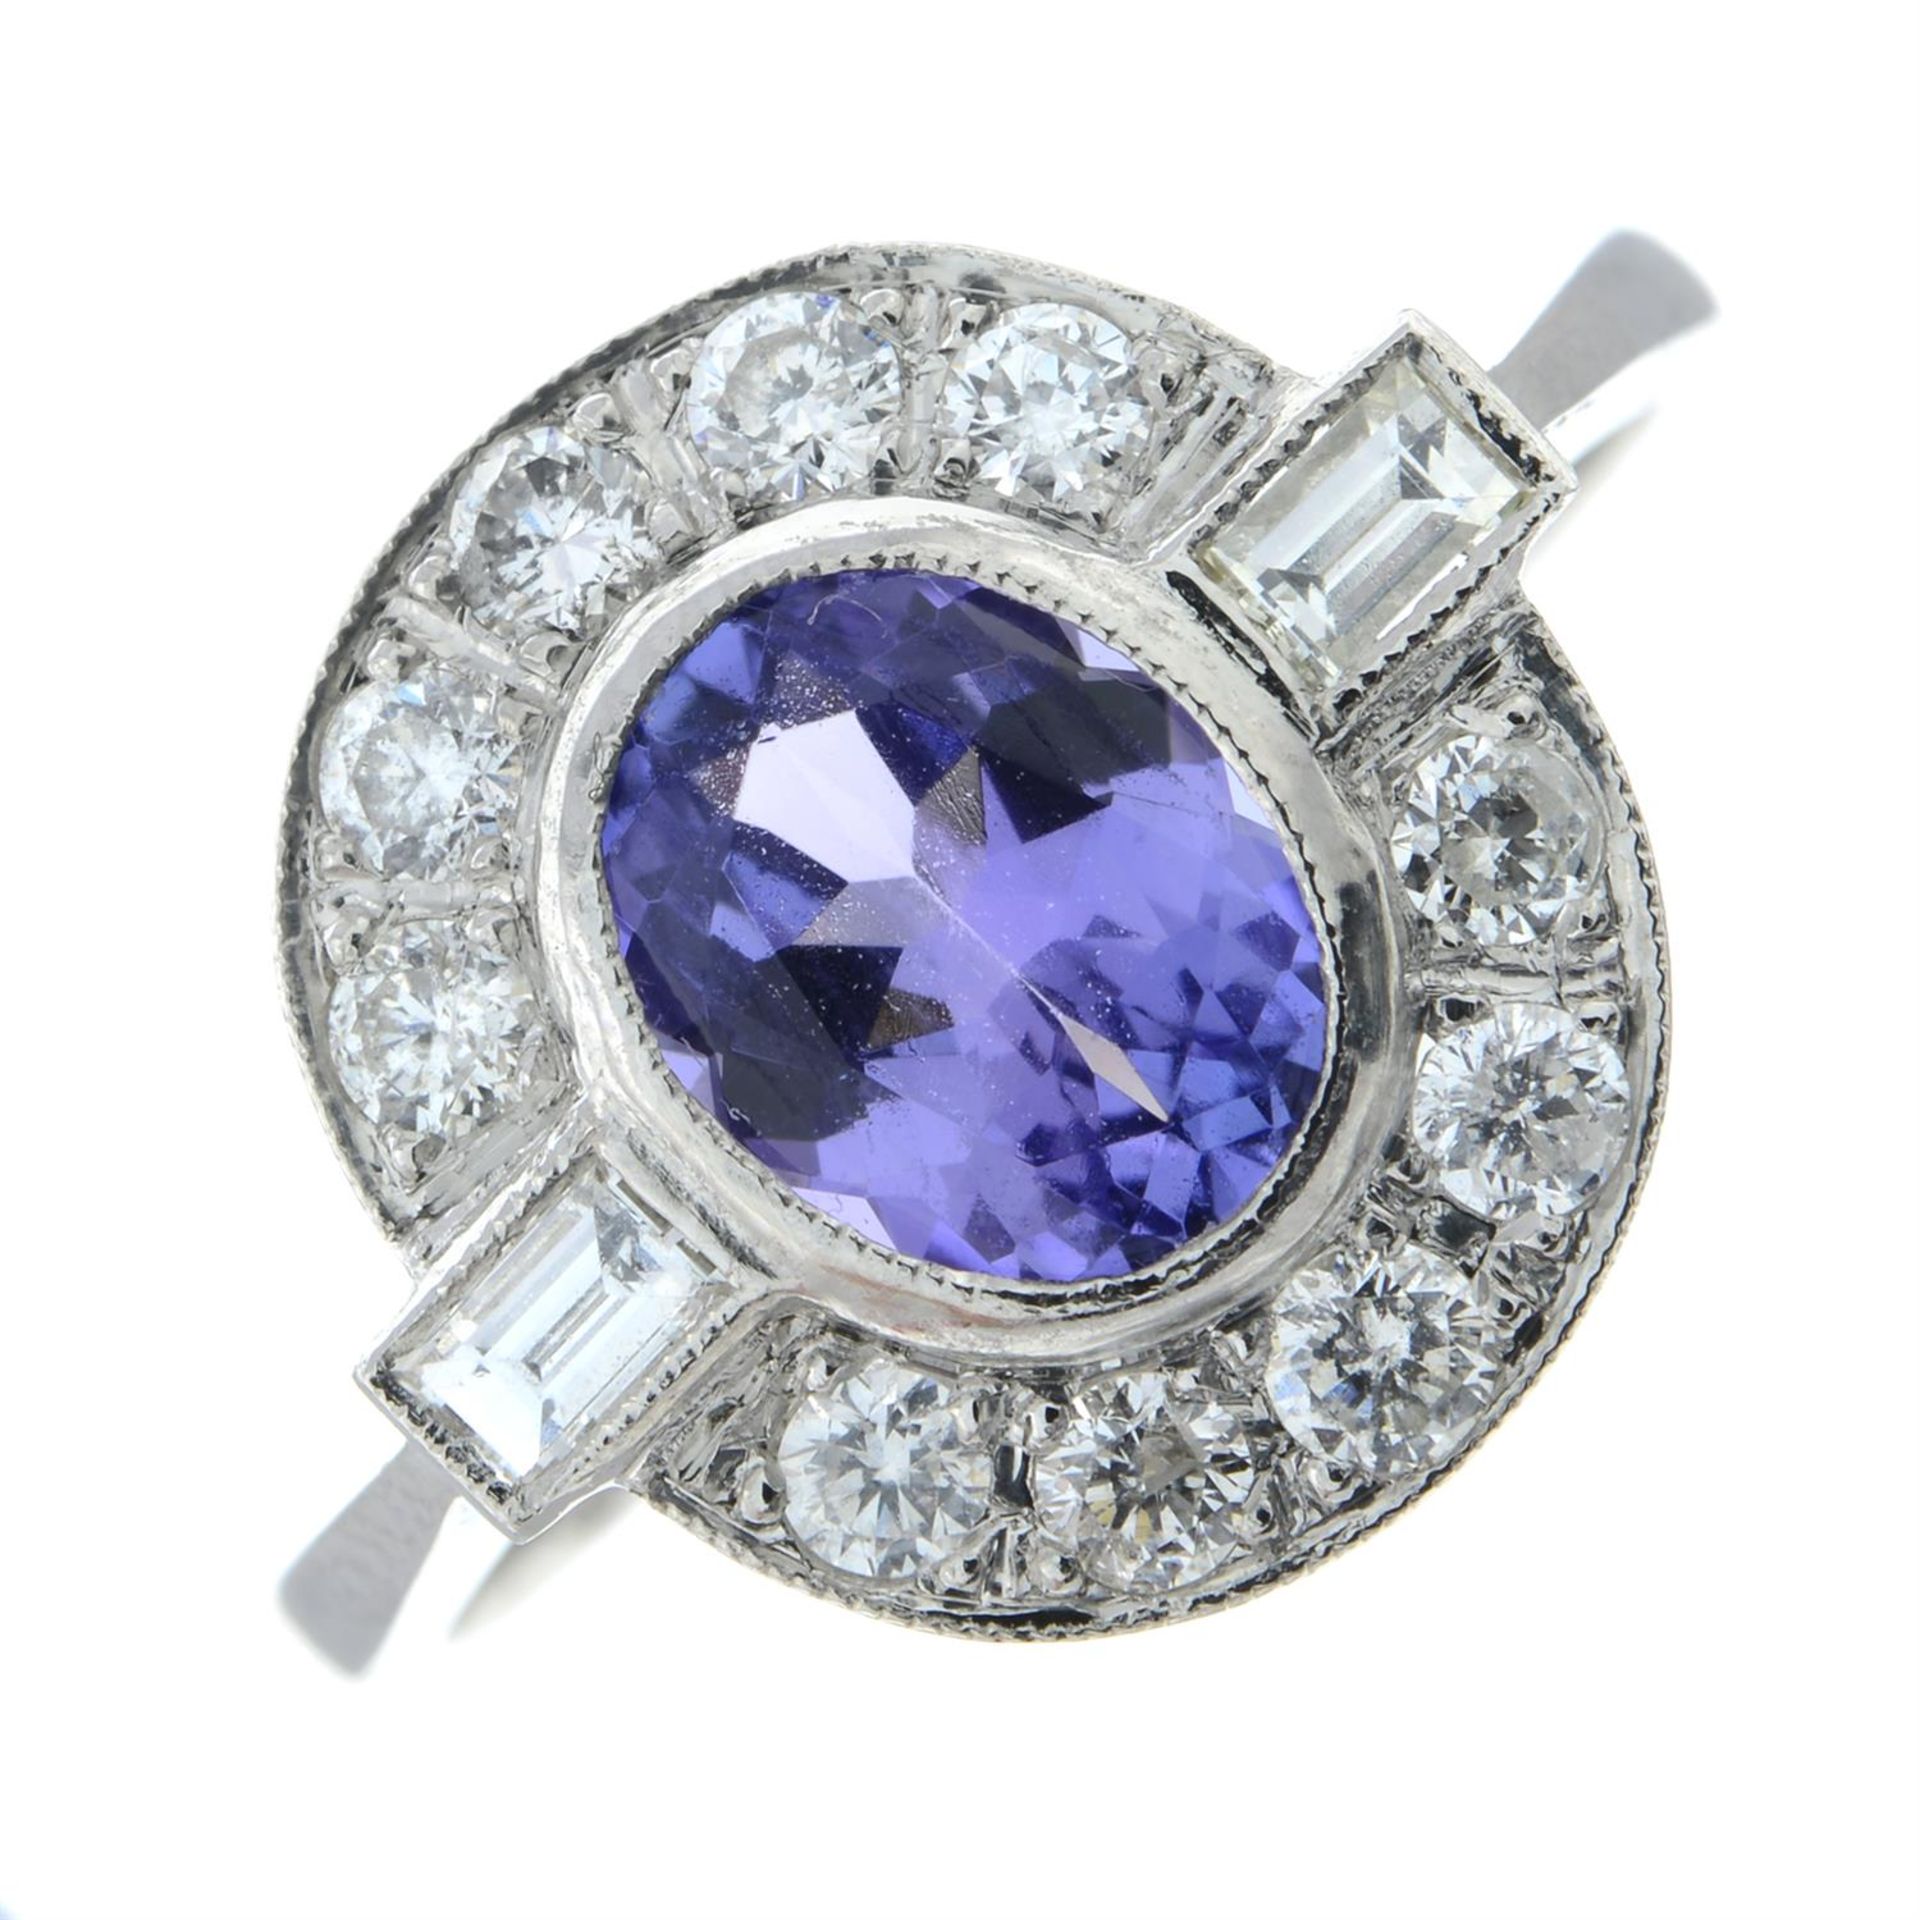 A tanzanite and diamond dress ring.